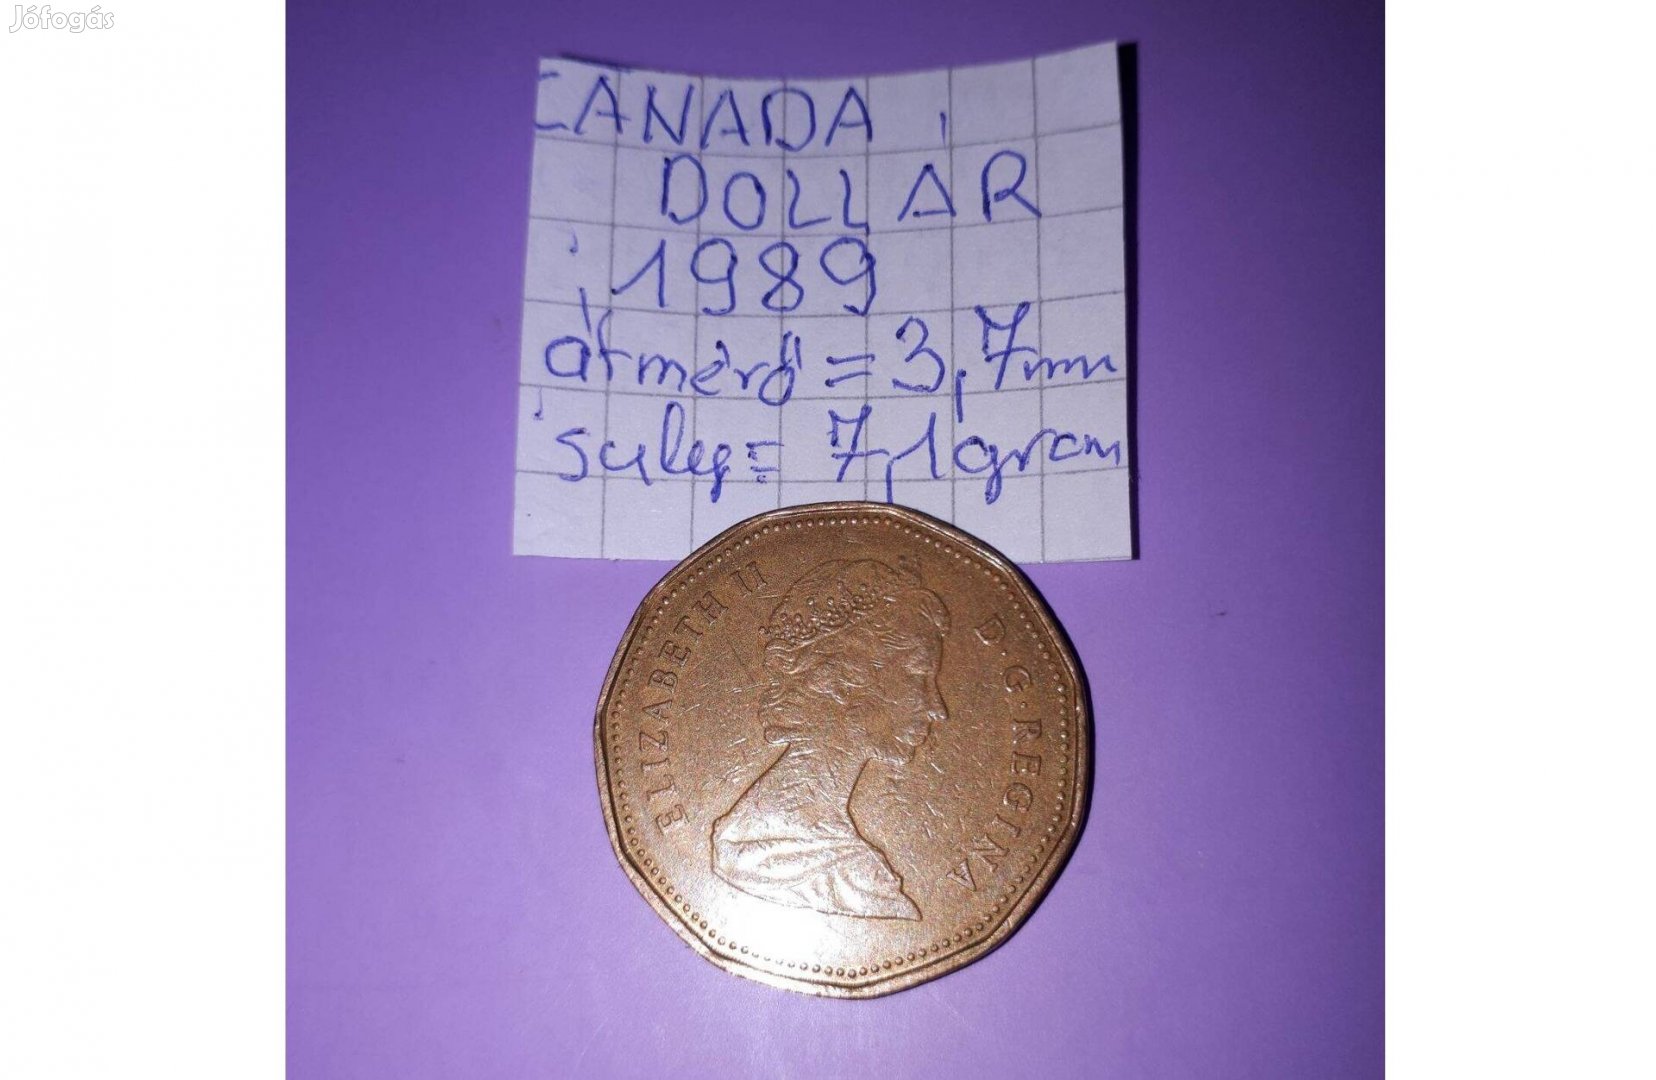 Canada dollár 1989 fémpénz